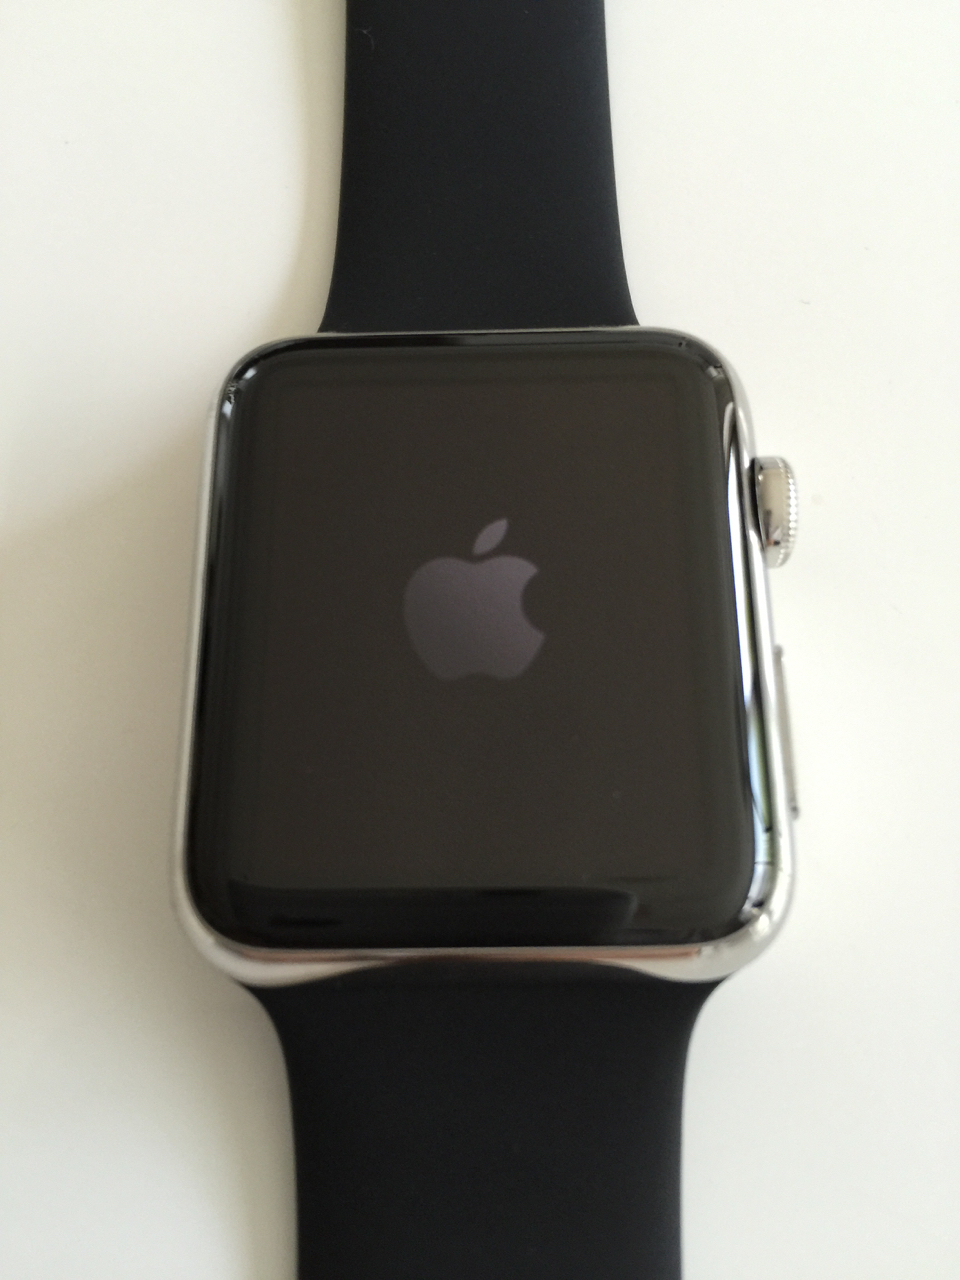 Apple Watch 42mm ステンレススチールケース with ブラックスポーツ 